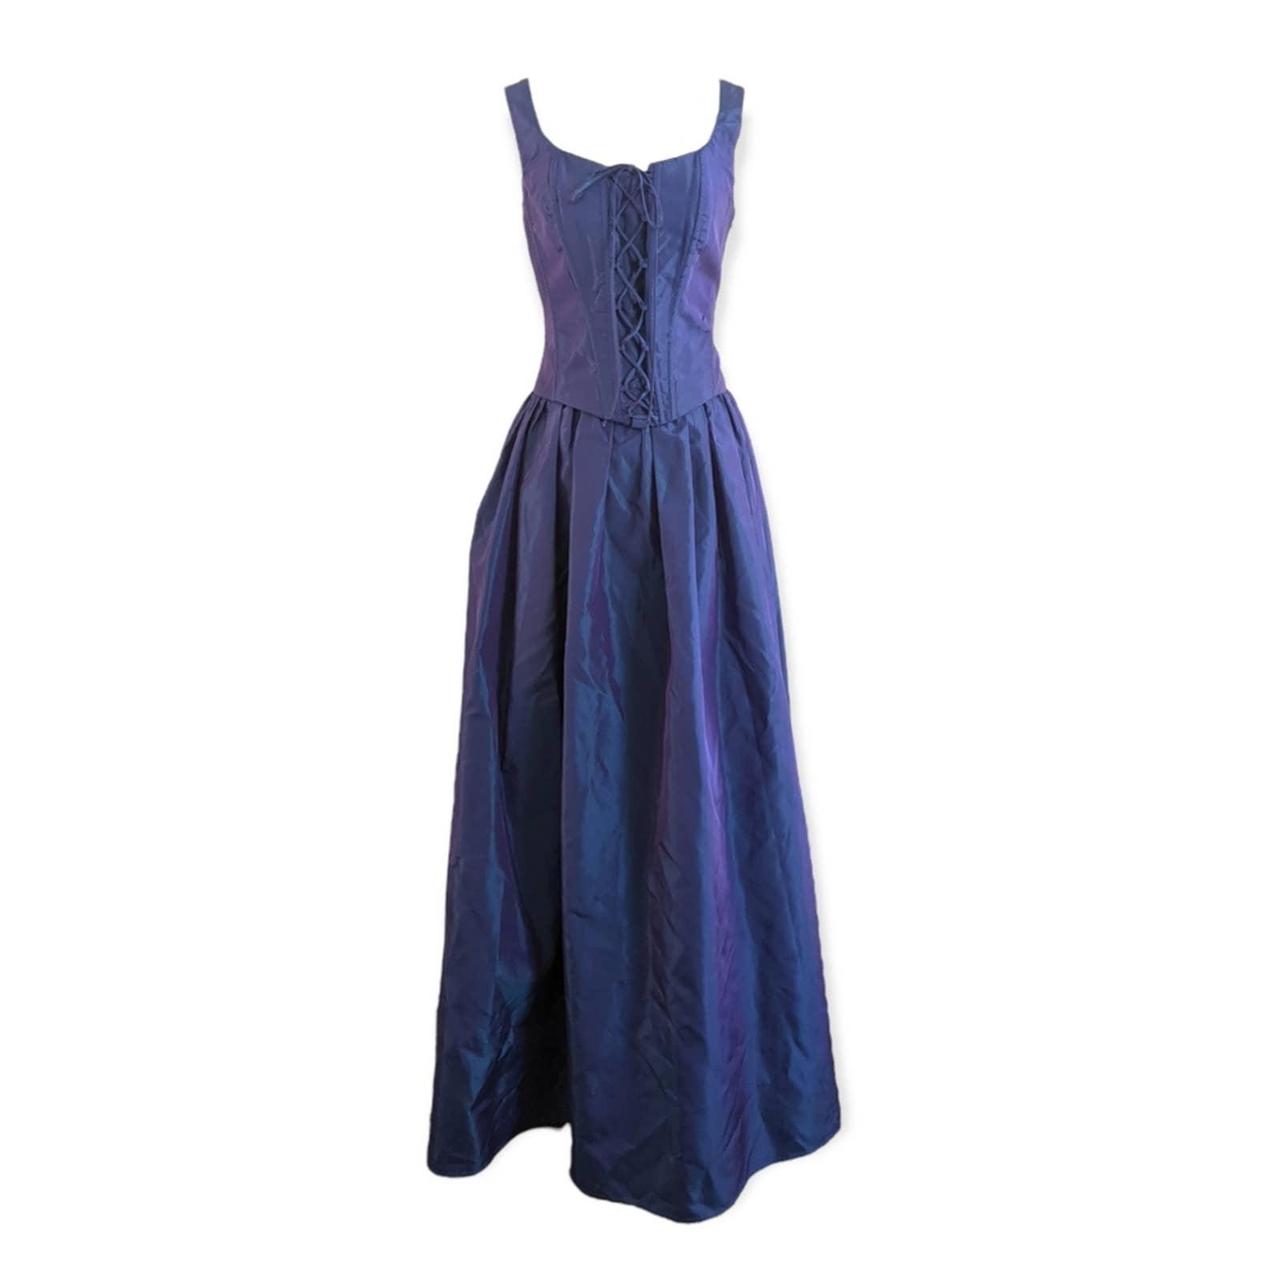 Dark Blue Renaissance Corset Dress